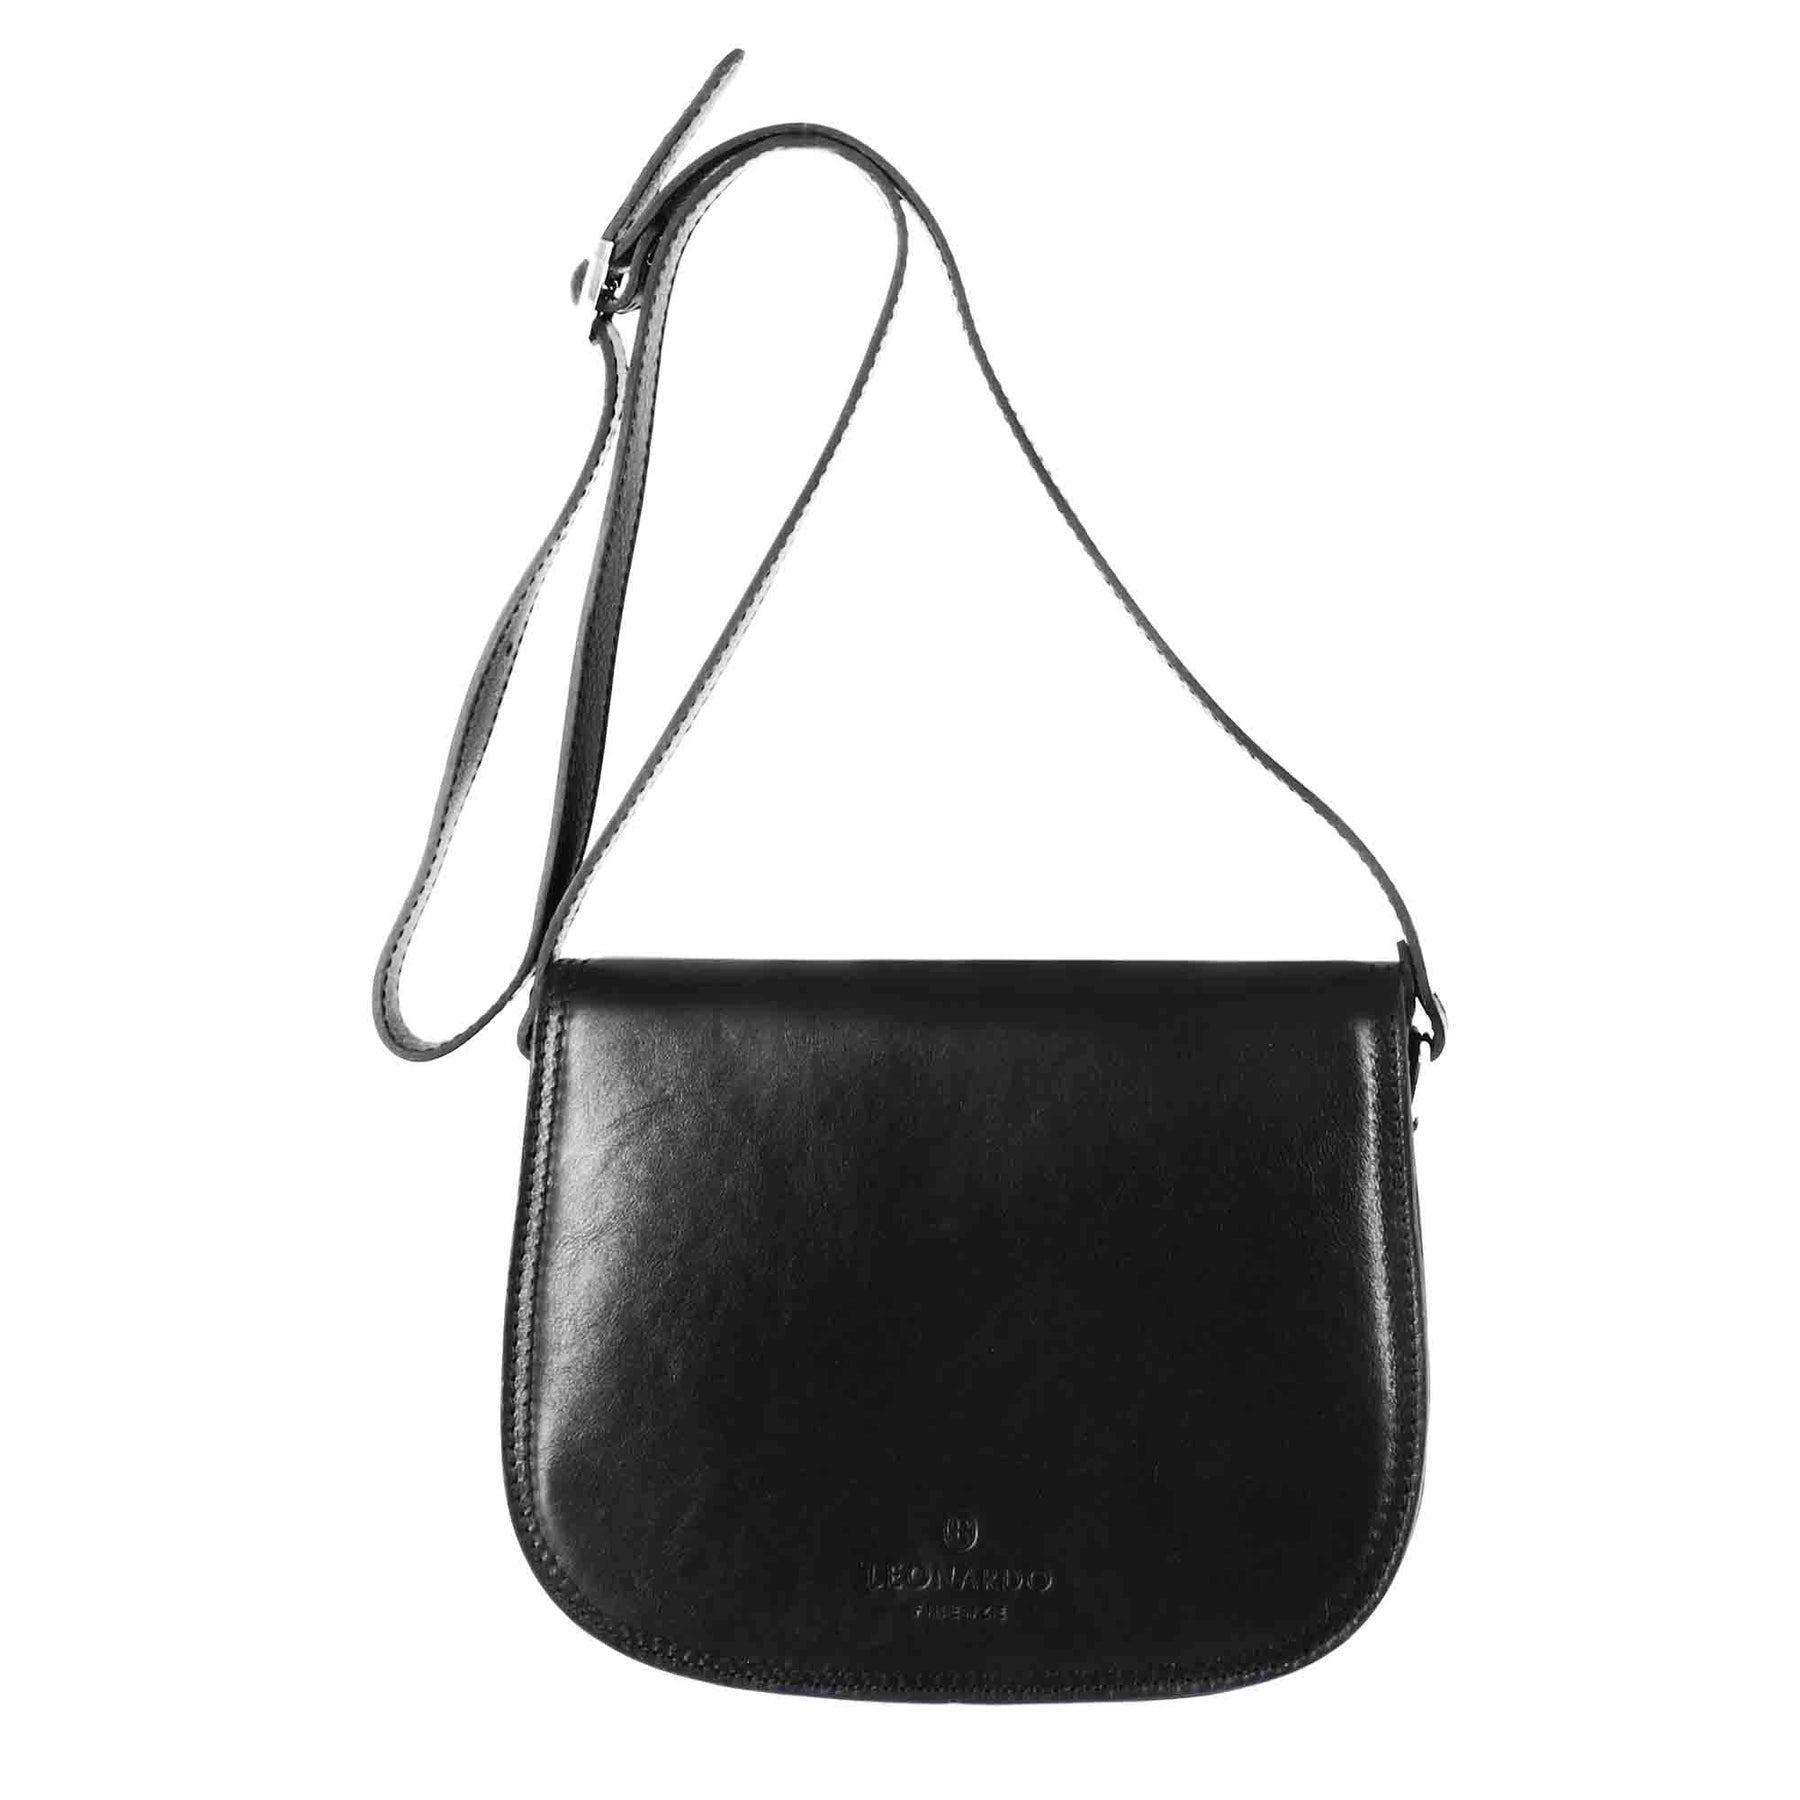 Essential Bag für Frauen aus schwarzem Glattleder